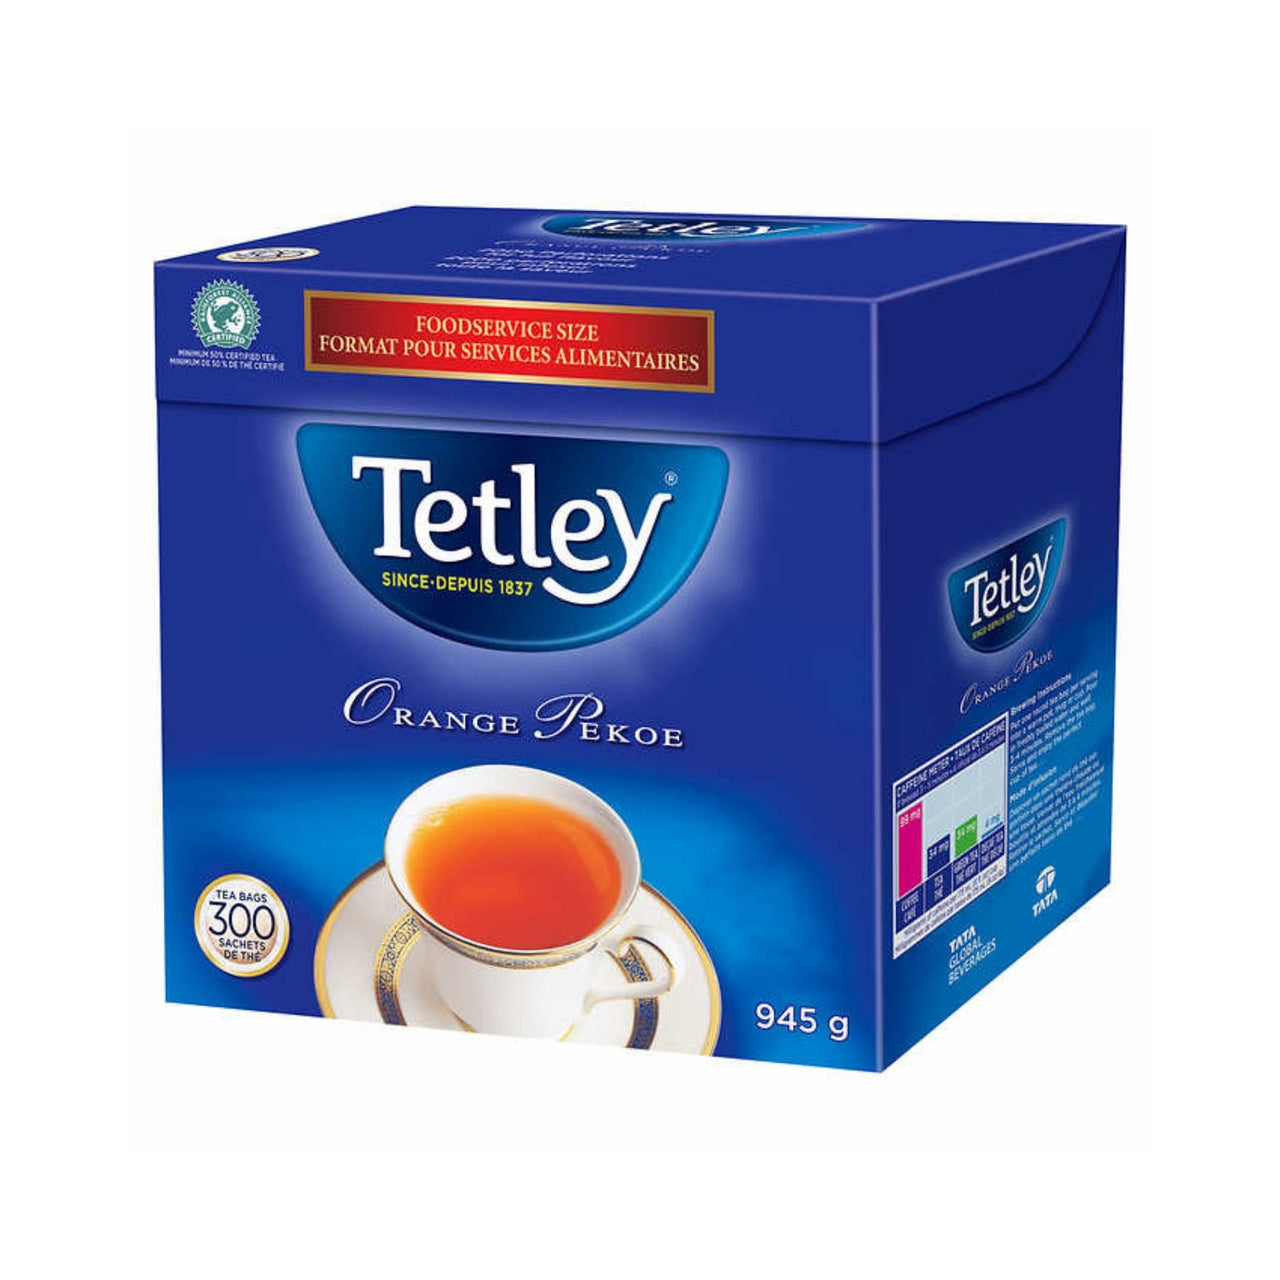 Image of Tetley Orange Pekoe Tea